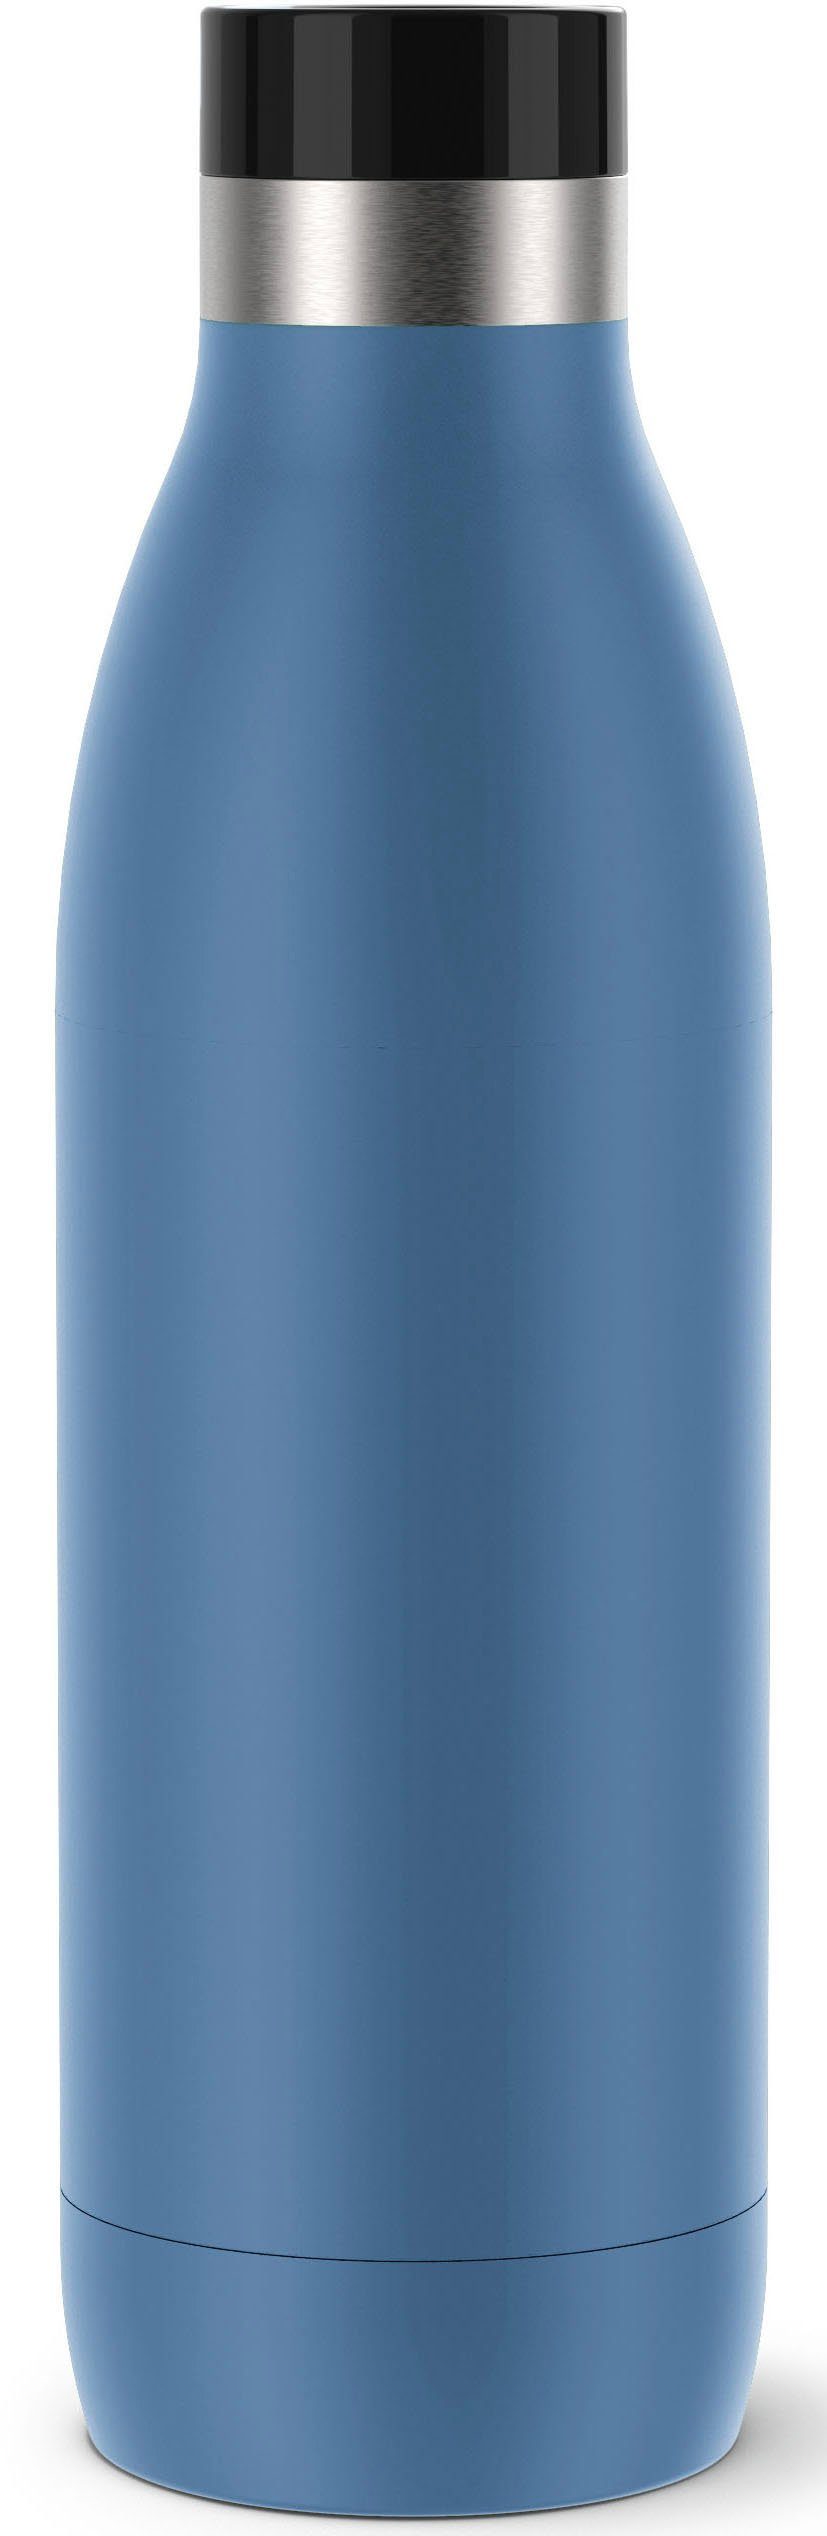 Emsa Isolierflasche Bludrop, Quick-Press Verschluss, 360° Trinkgenuss, 12 h warm, 24 h kühl, 0,7 L Blau